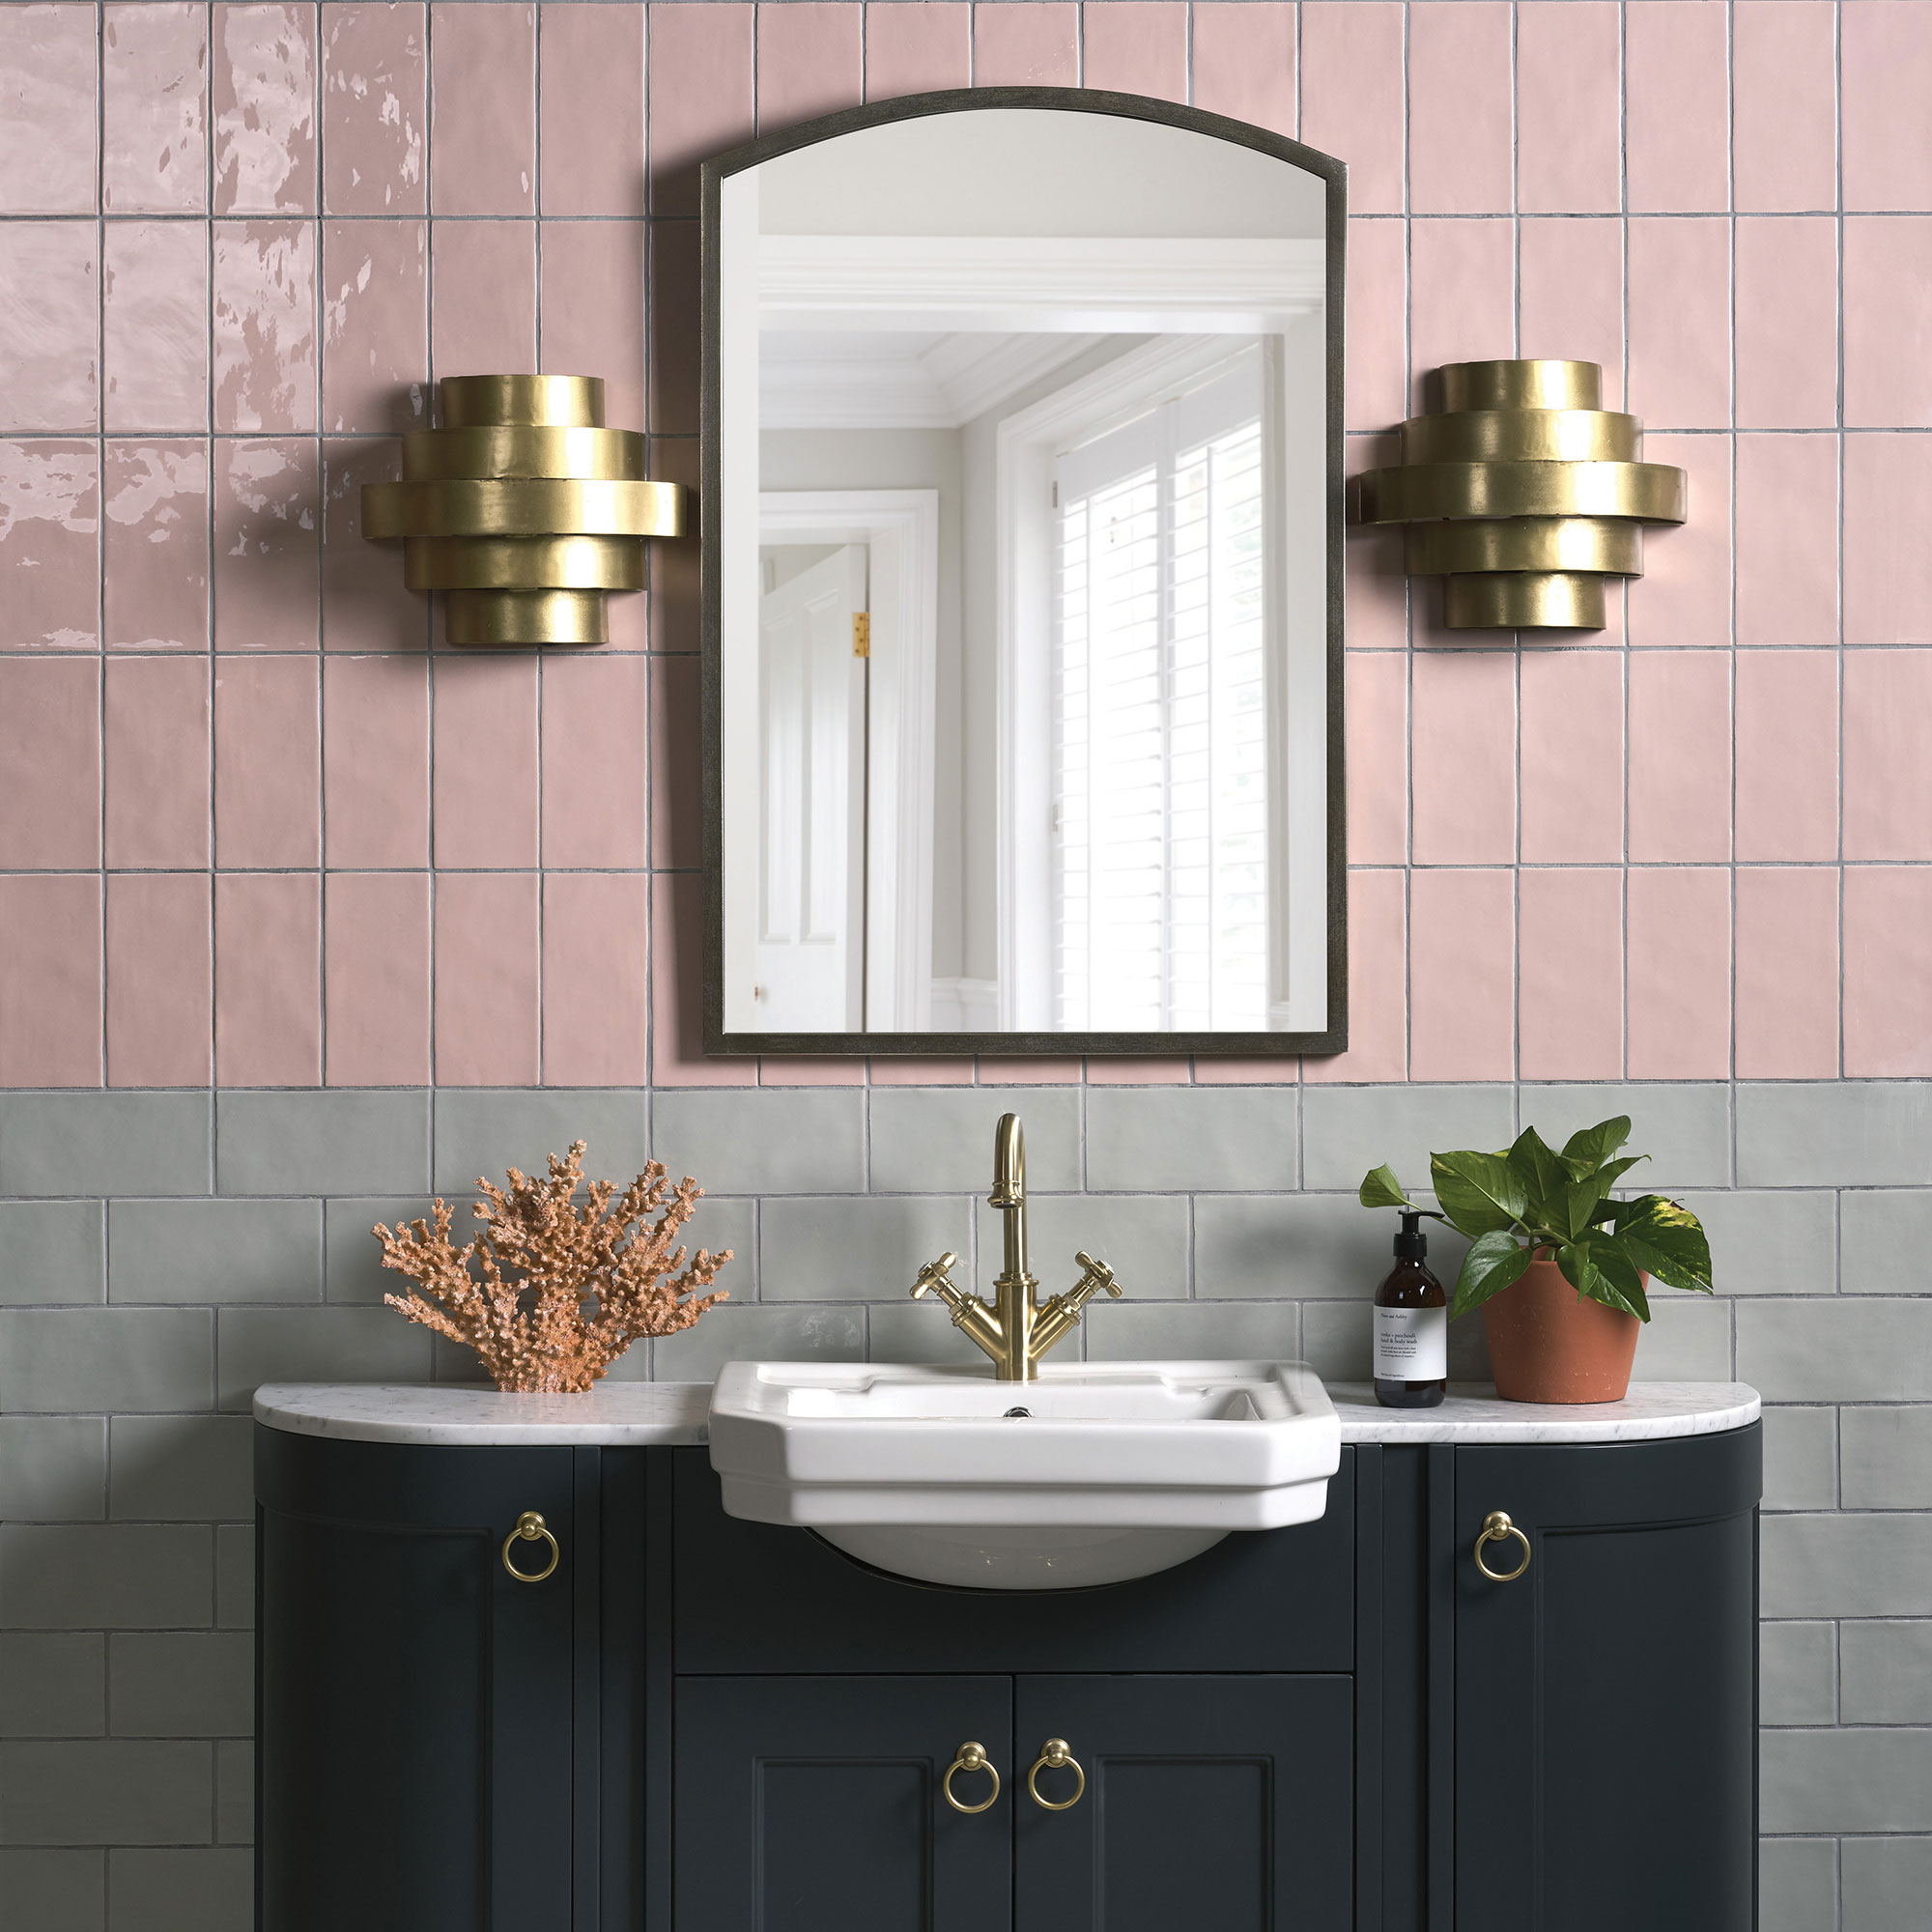 Kamar mandi dengan ubin dinding berwarna merah muda dan abu-abu, meja rias dan cermin